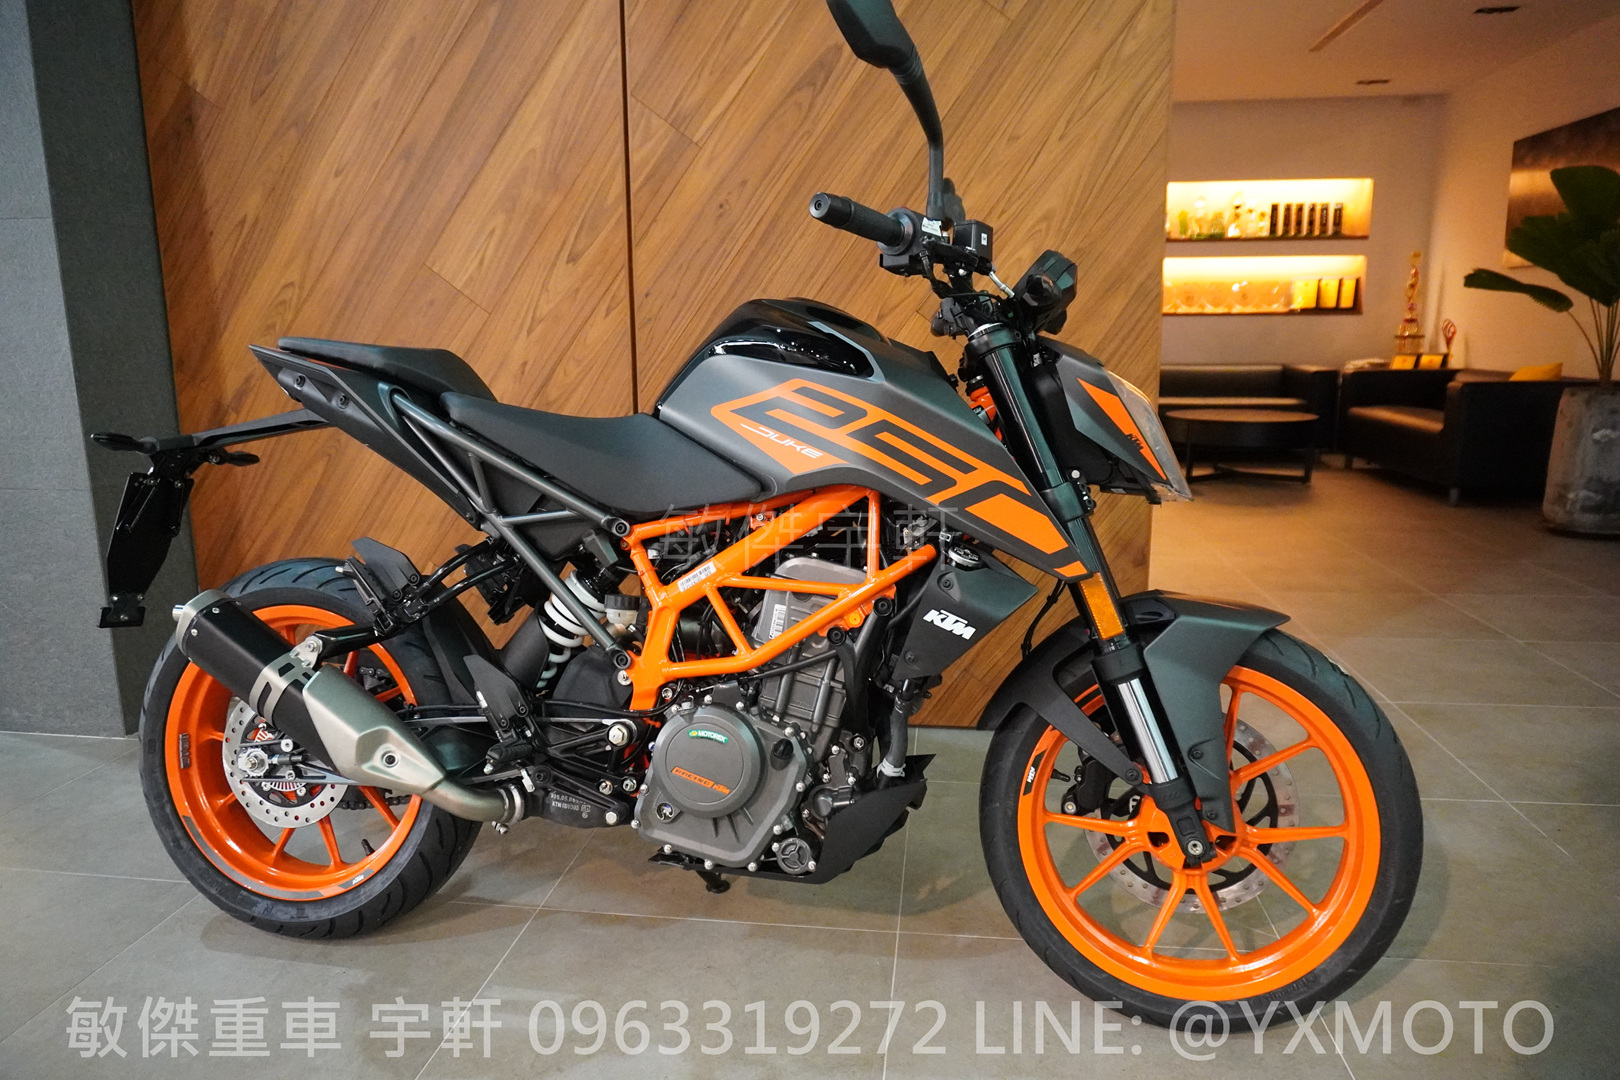 【重車銷售職人-宇軒 (敏傑)】KTM 250DUKE - 「Webike-摩托車市」 【敏傑宇軒】現車供應 ! 2021 KTM 250 DUKE 總代理公司車